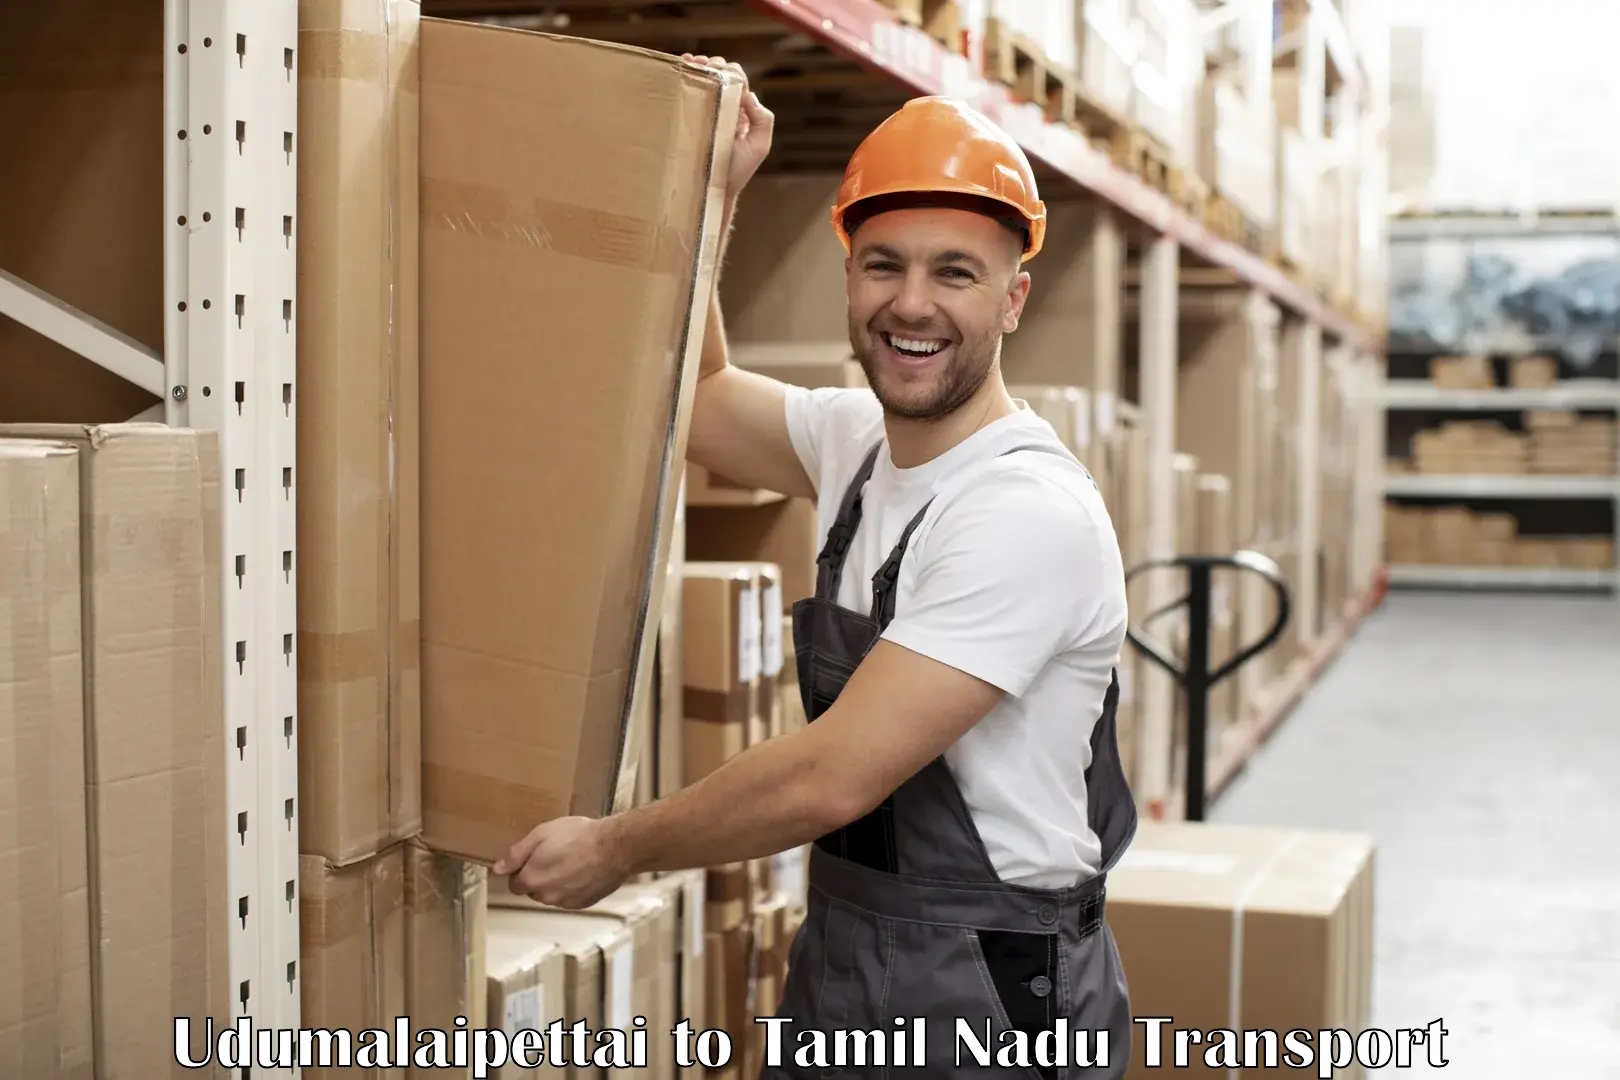 Furniture transport service Udumalaipettai to Tamil Nadu